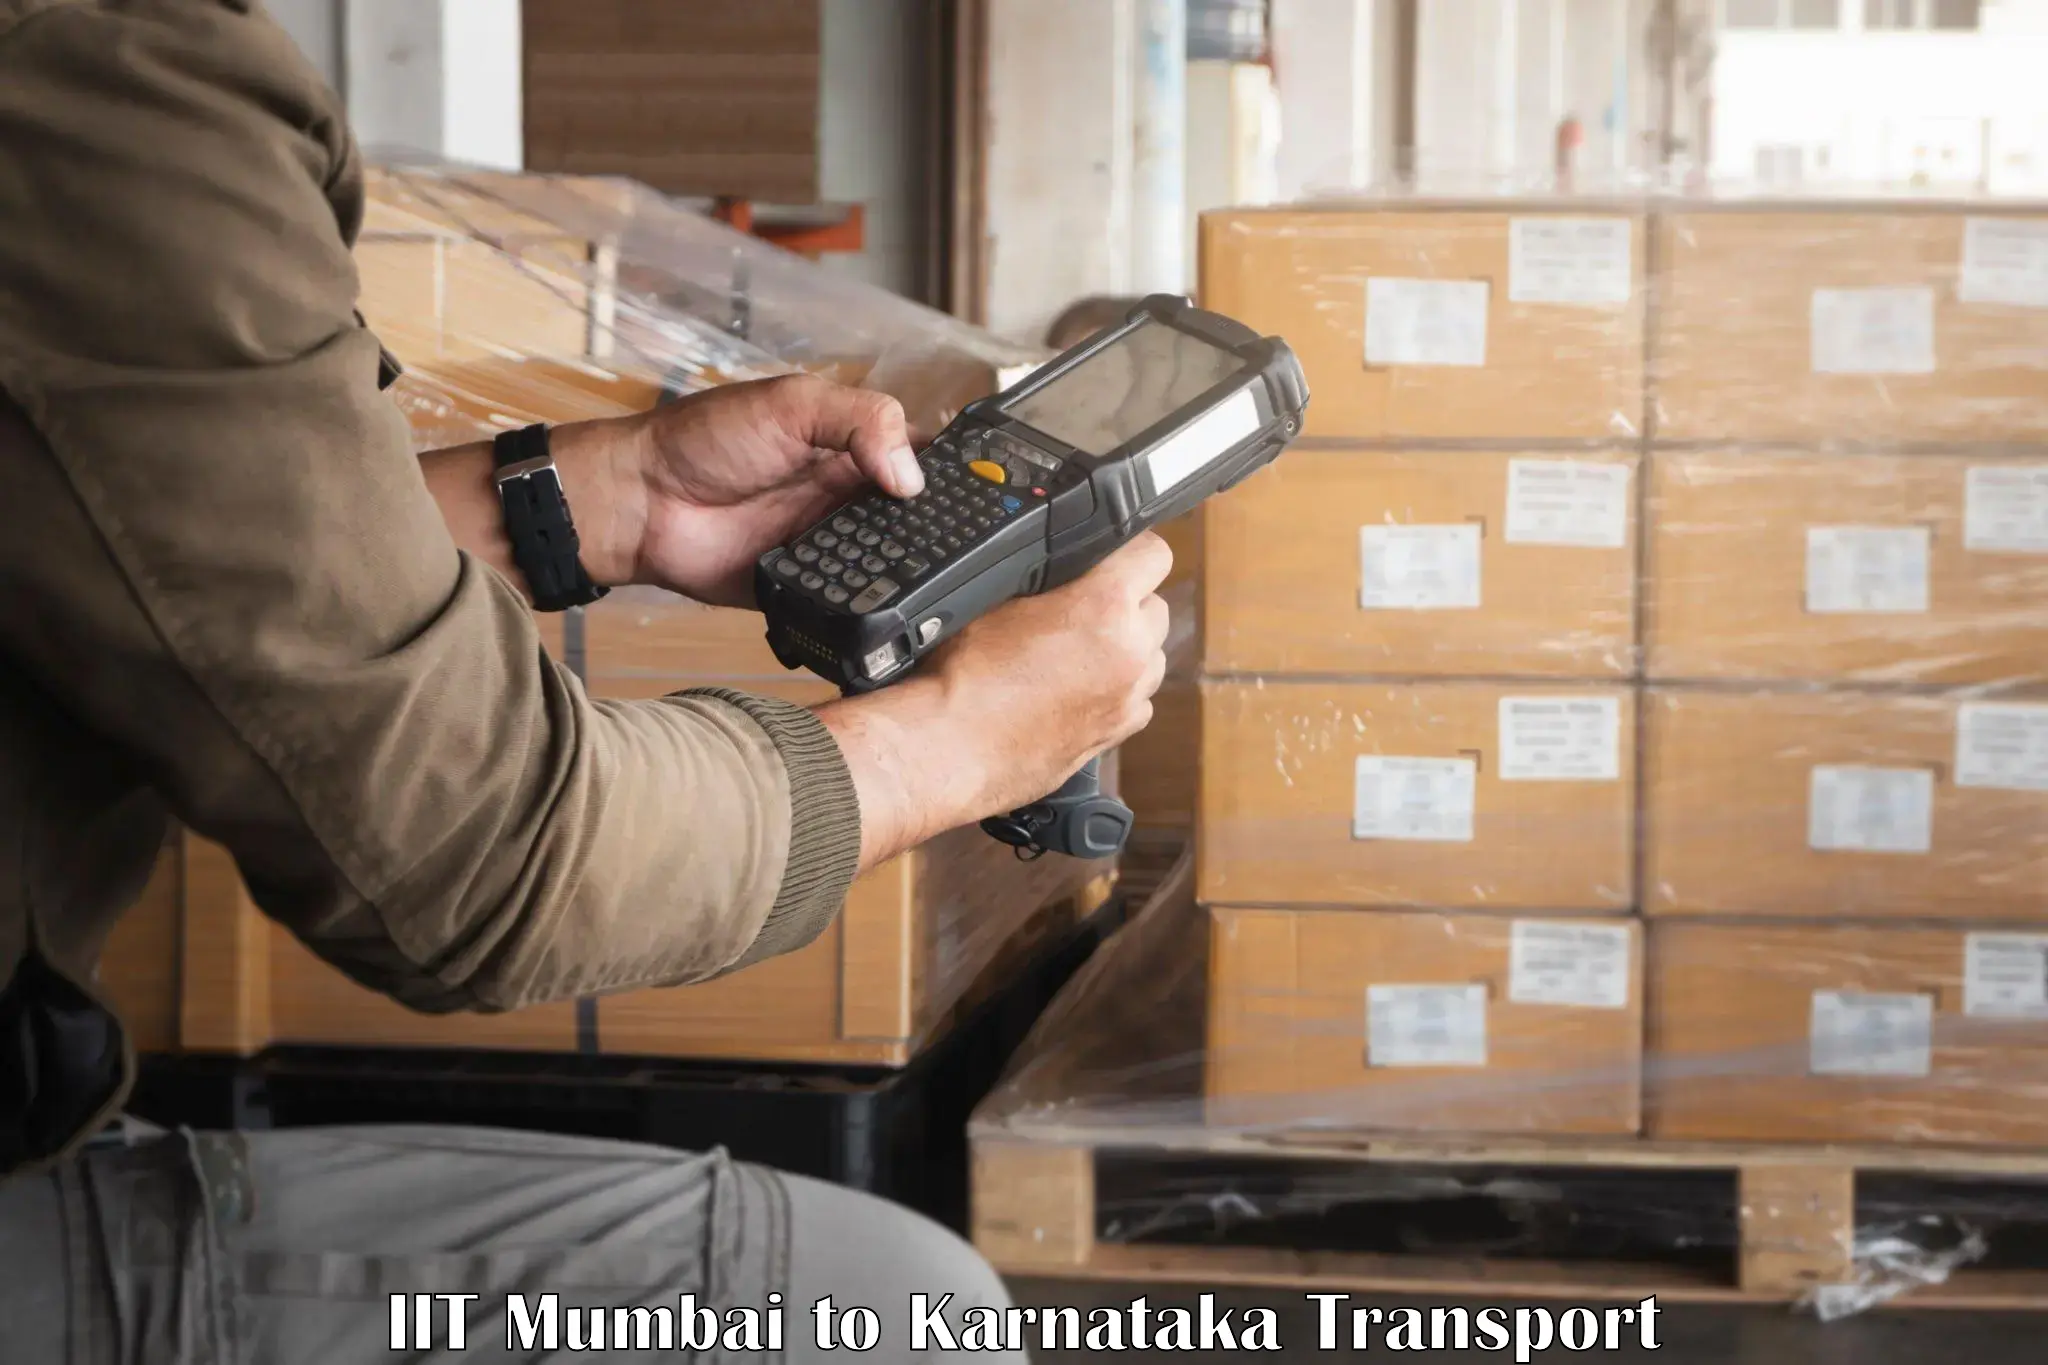 Pick up transport service IIT Mumbai to Bailhongal